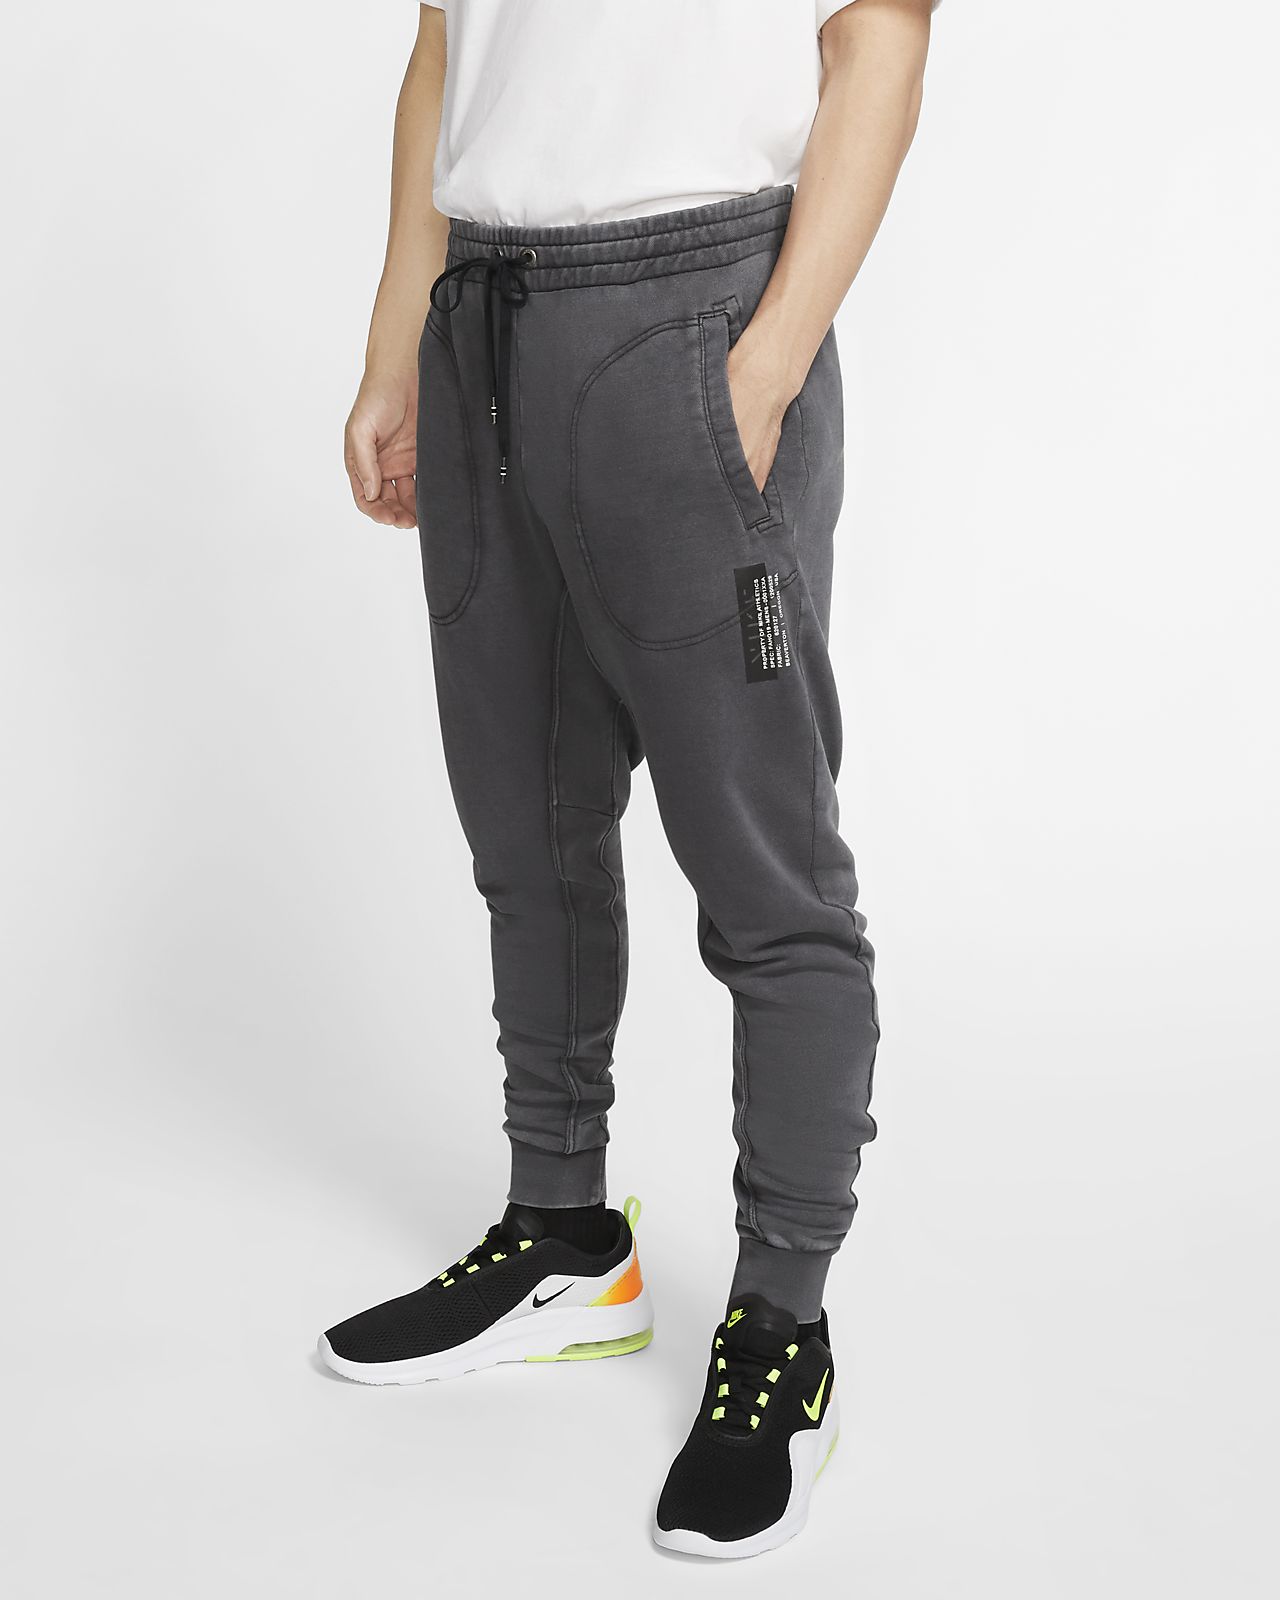 Nike Sportswear Men's Trousers. Nike ID